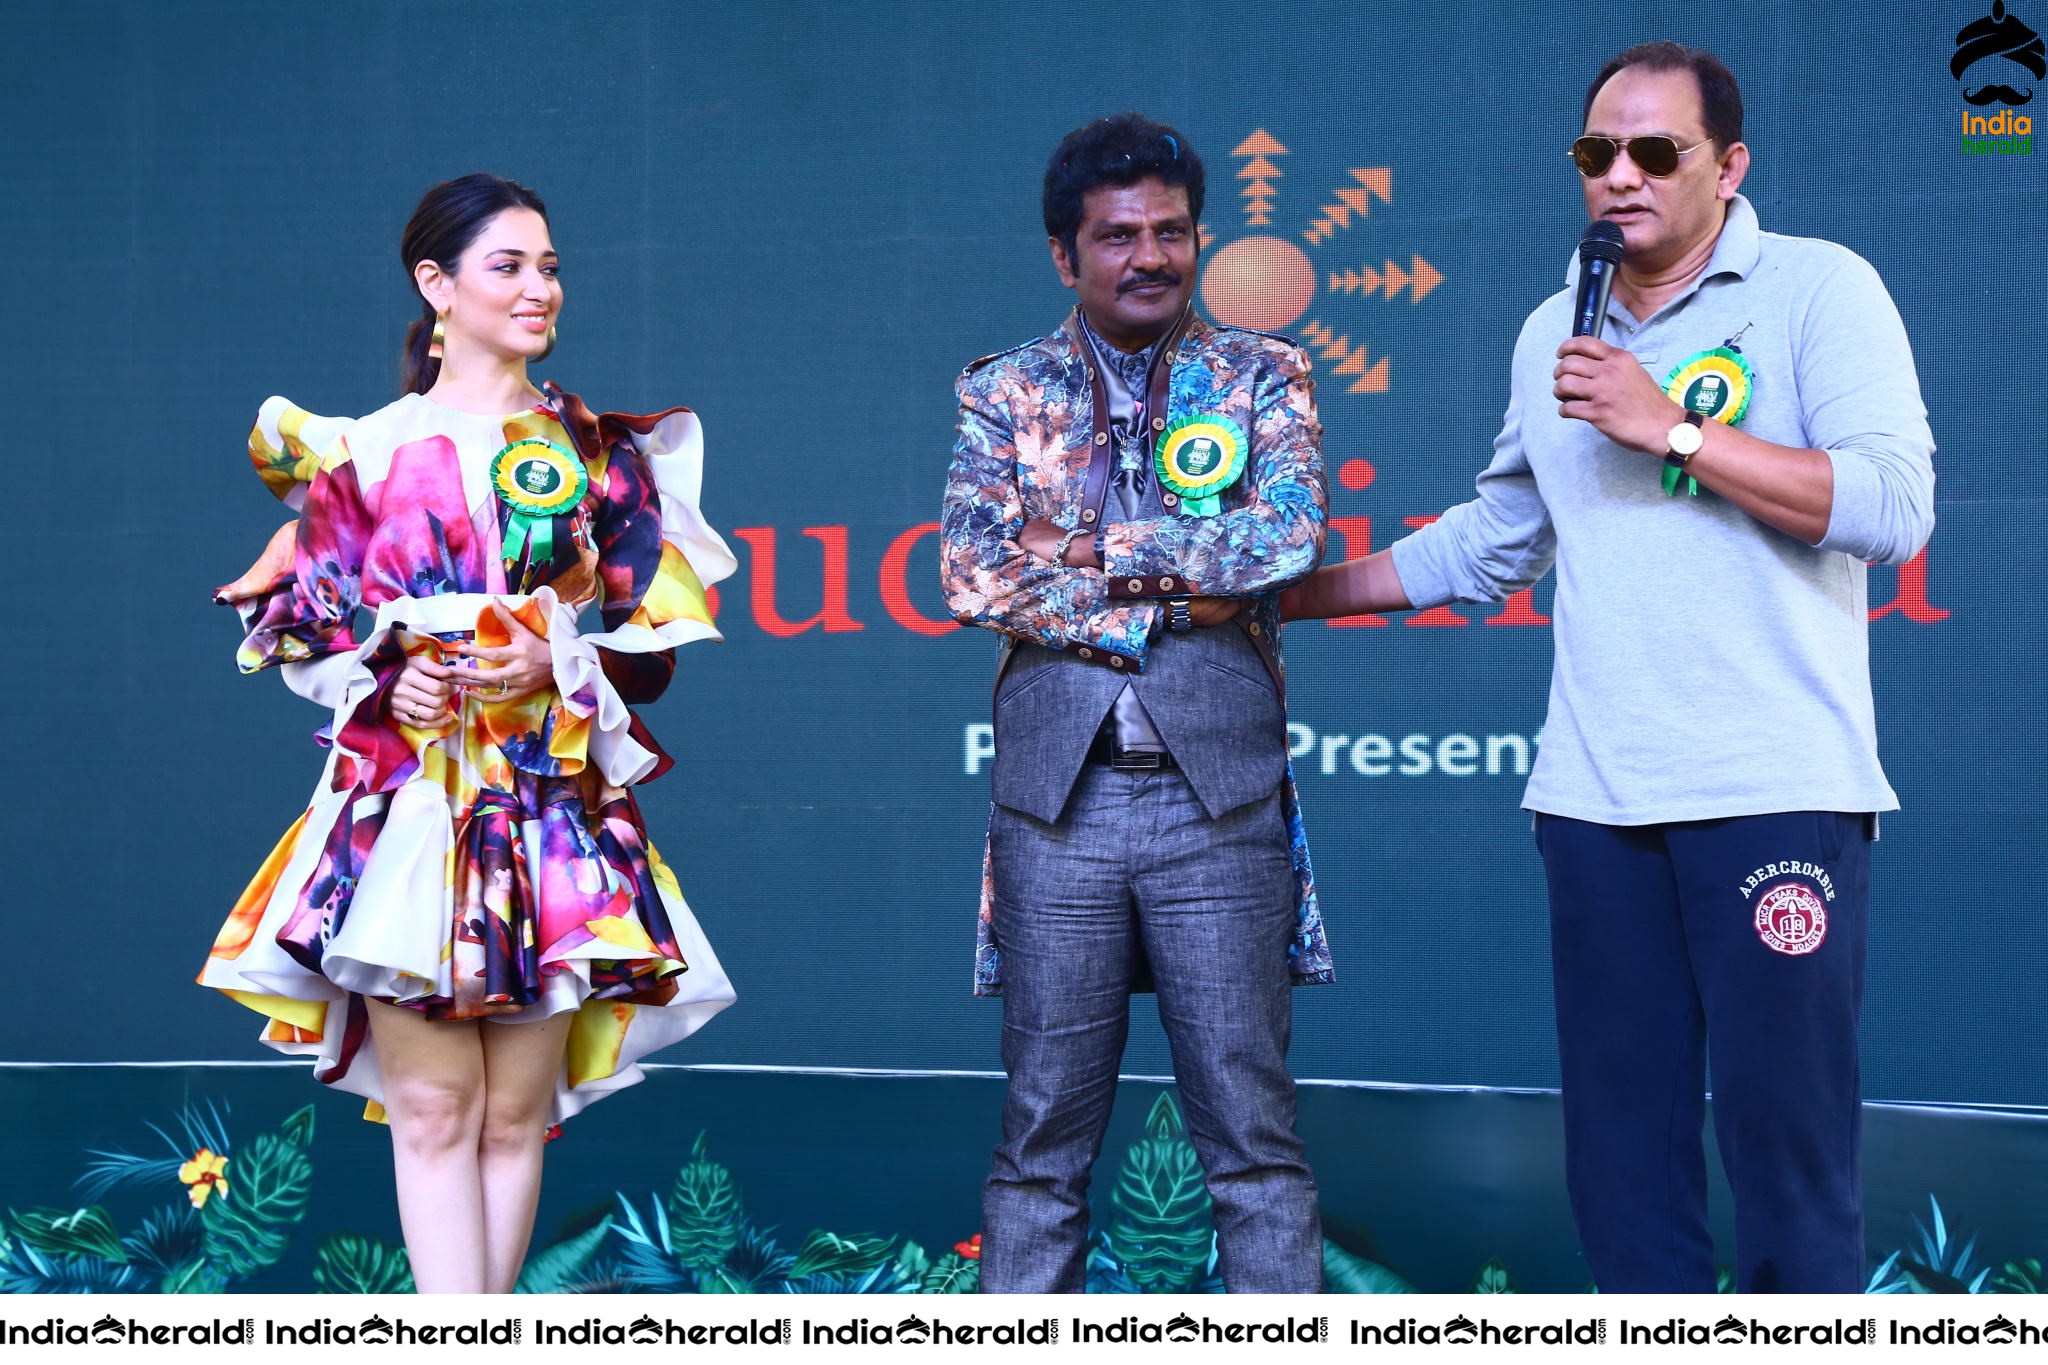 Tamannah and Azharuddin Grand Launched the SUCHIRINDIA IVY GREENS PROJECT at MAHESHWARAM Set 1